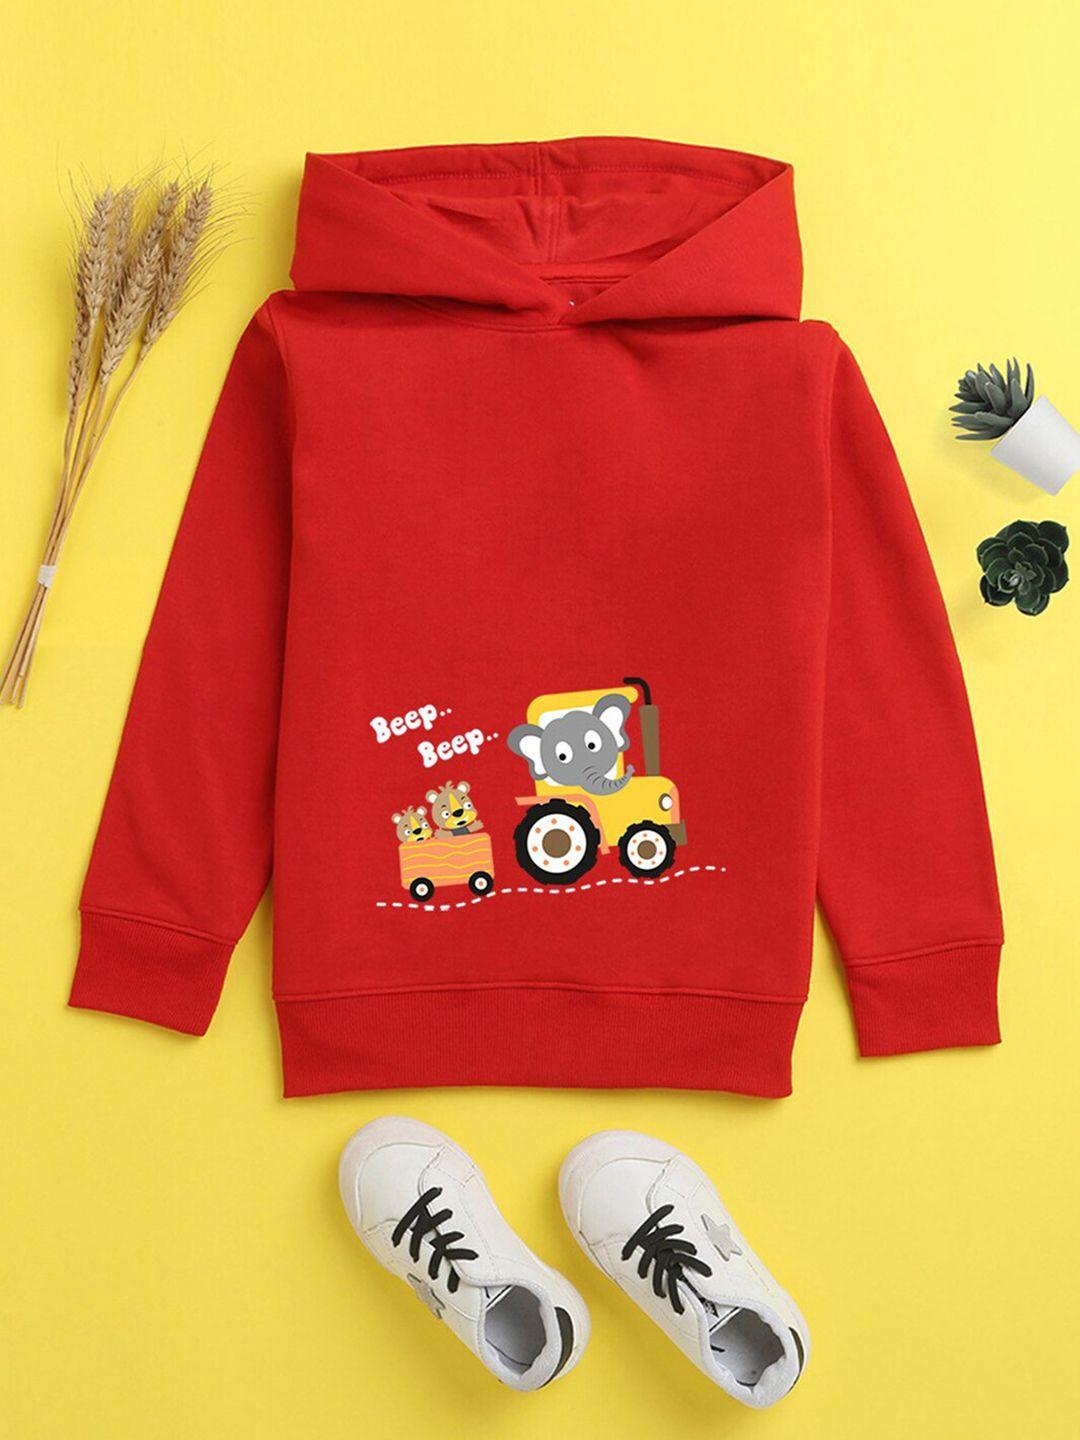 nusyl unisex kids red printed hooded sweatshirt